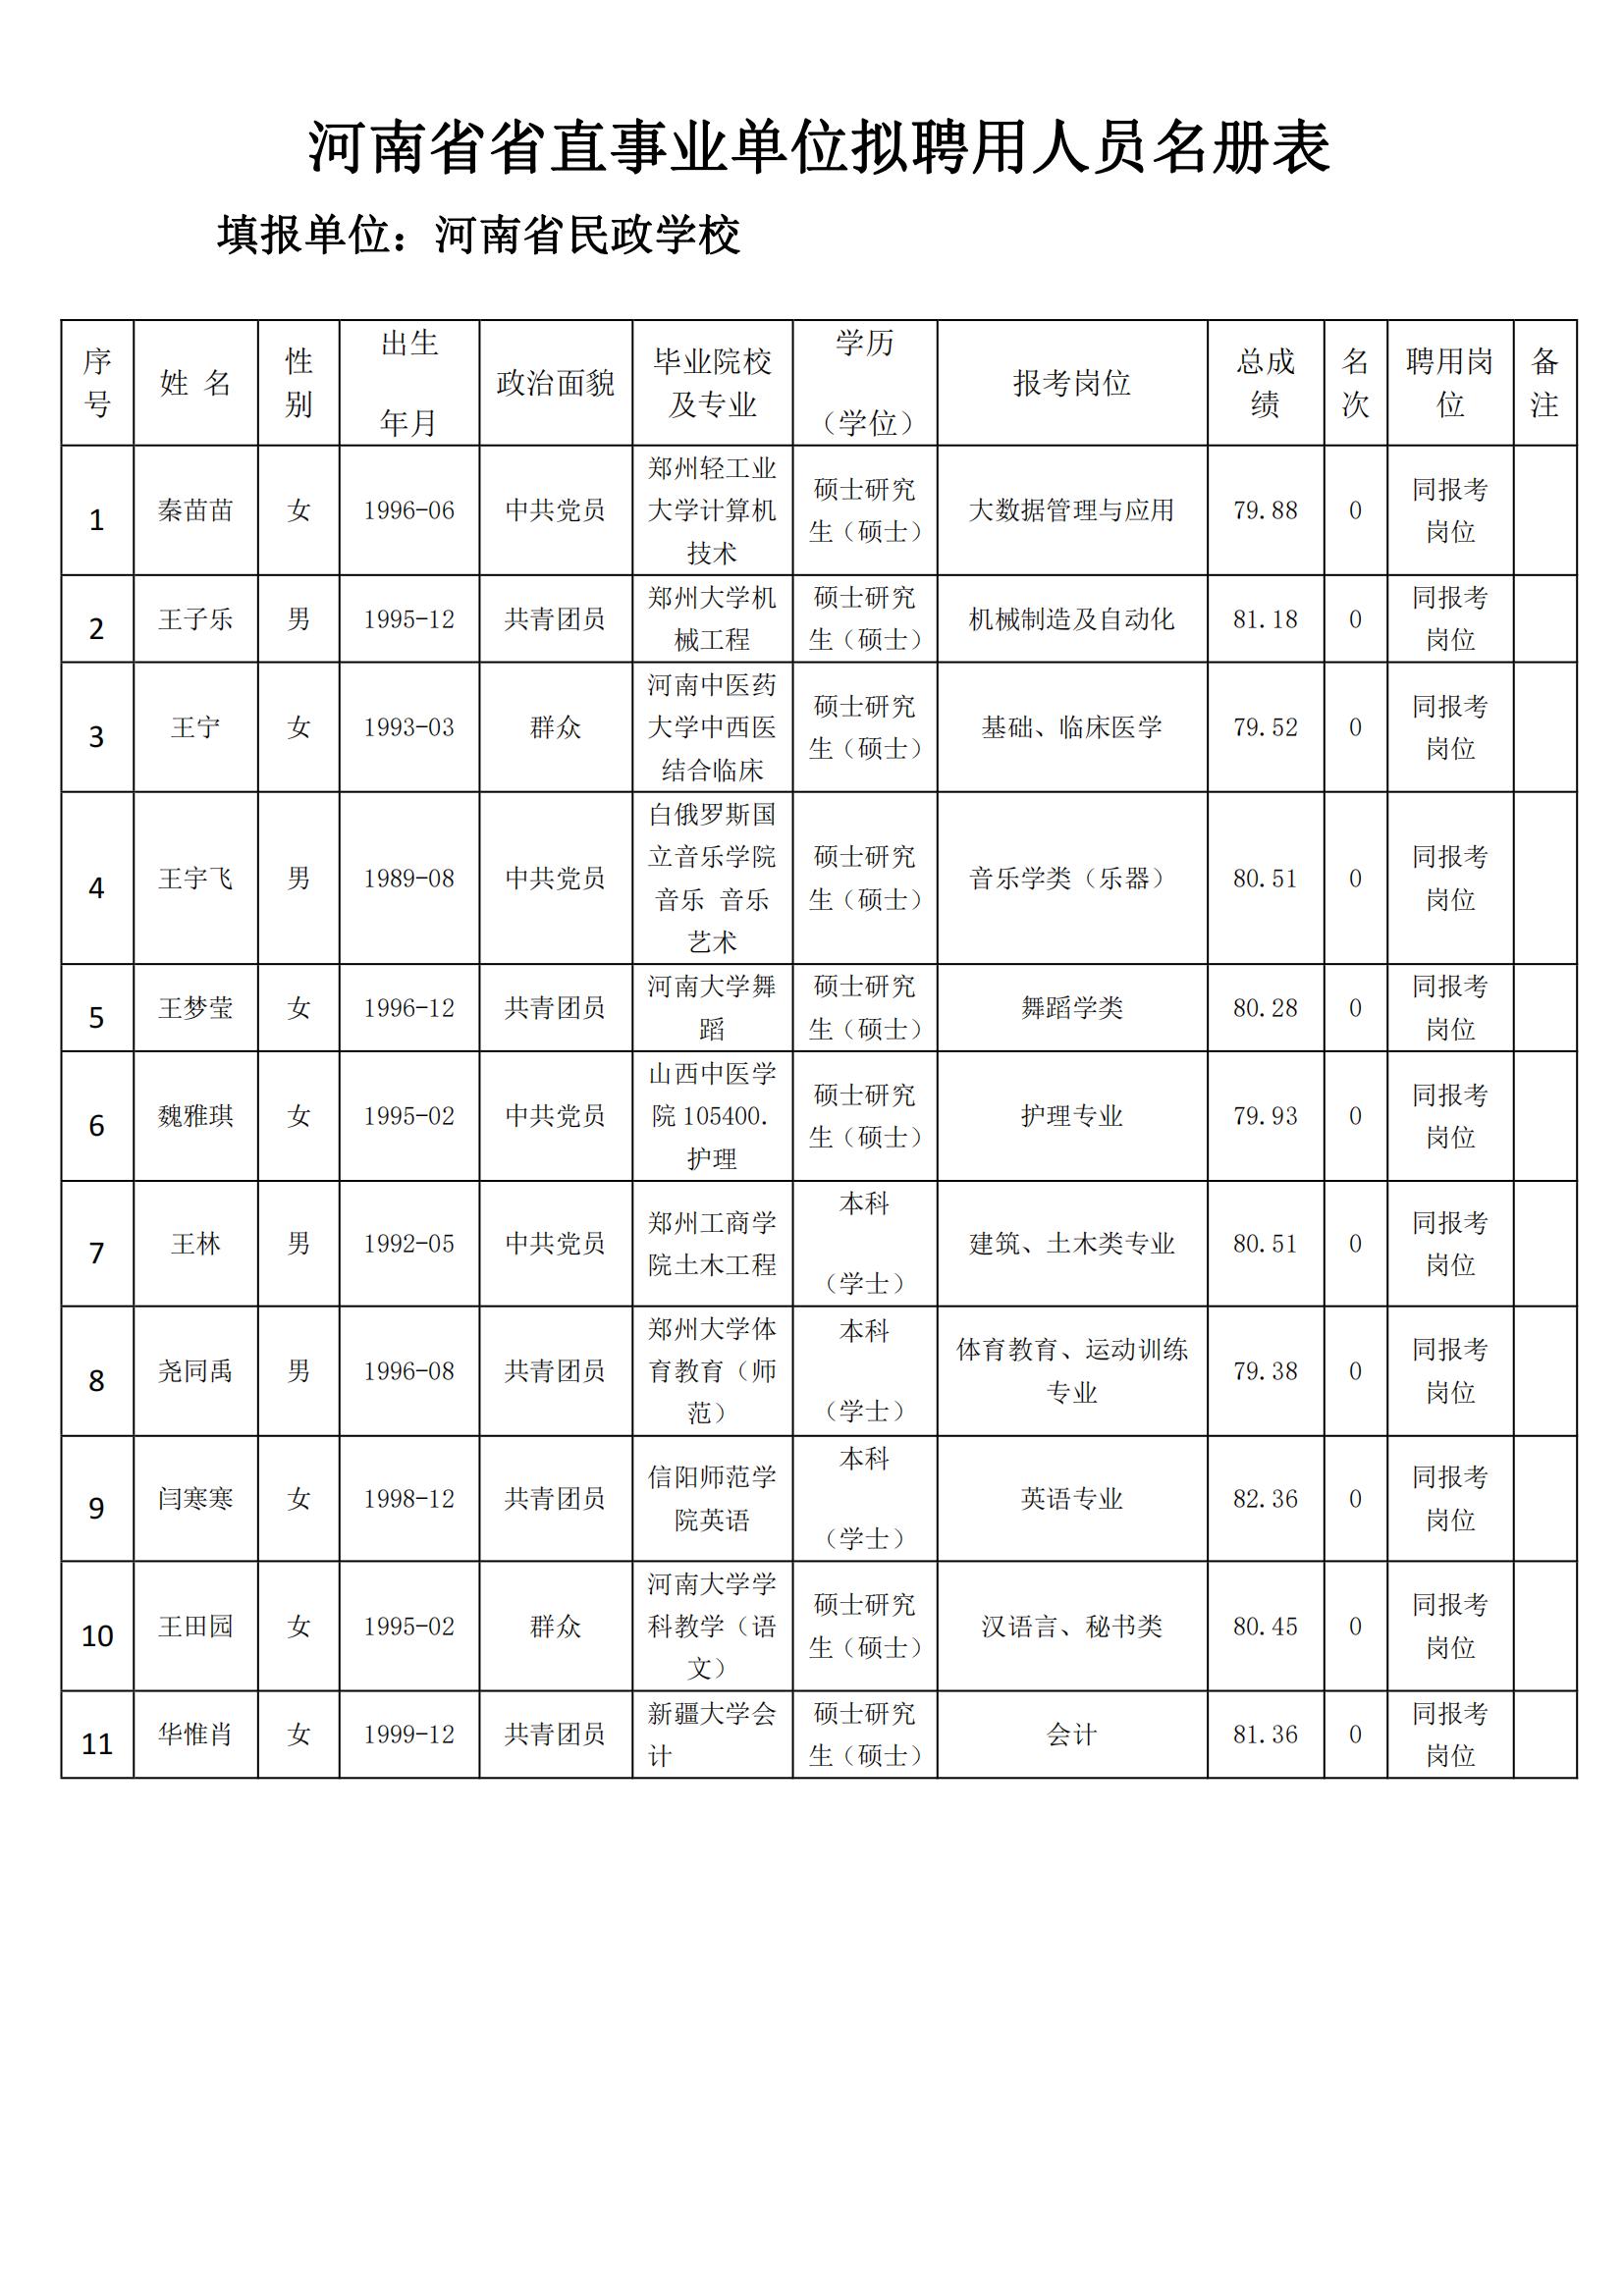 河南省省直事业单位拟聘用人员名册表_00.jpg